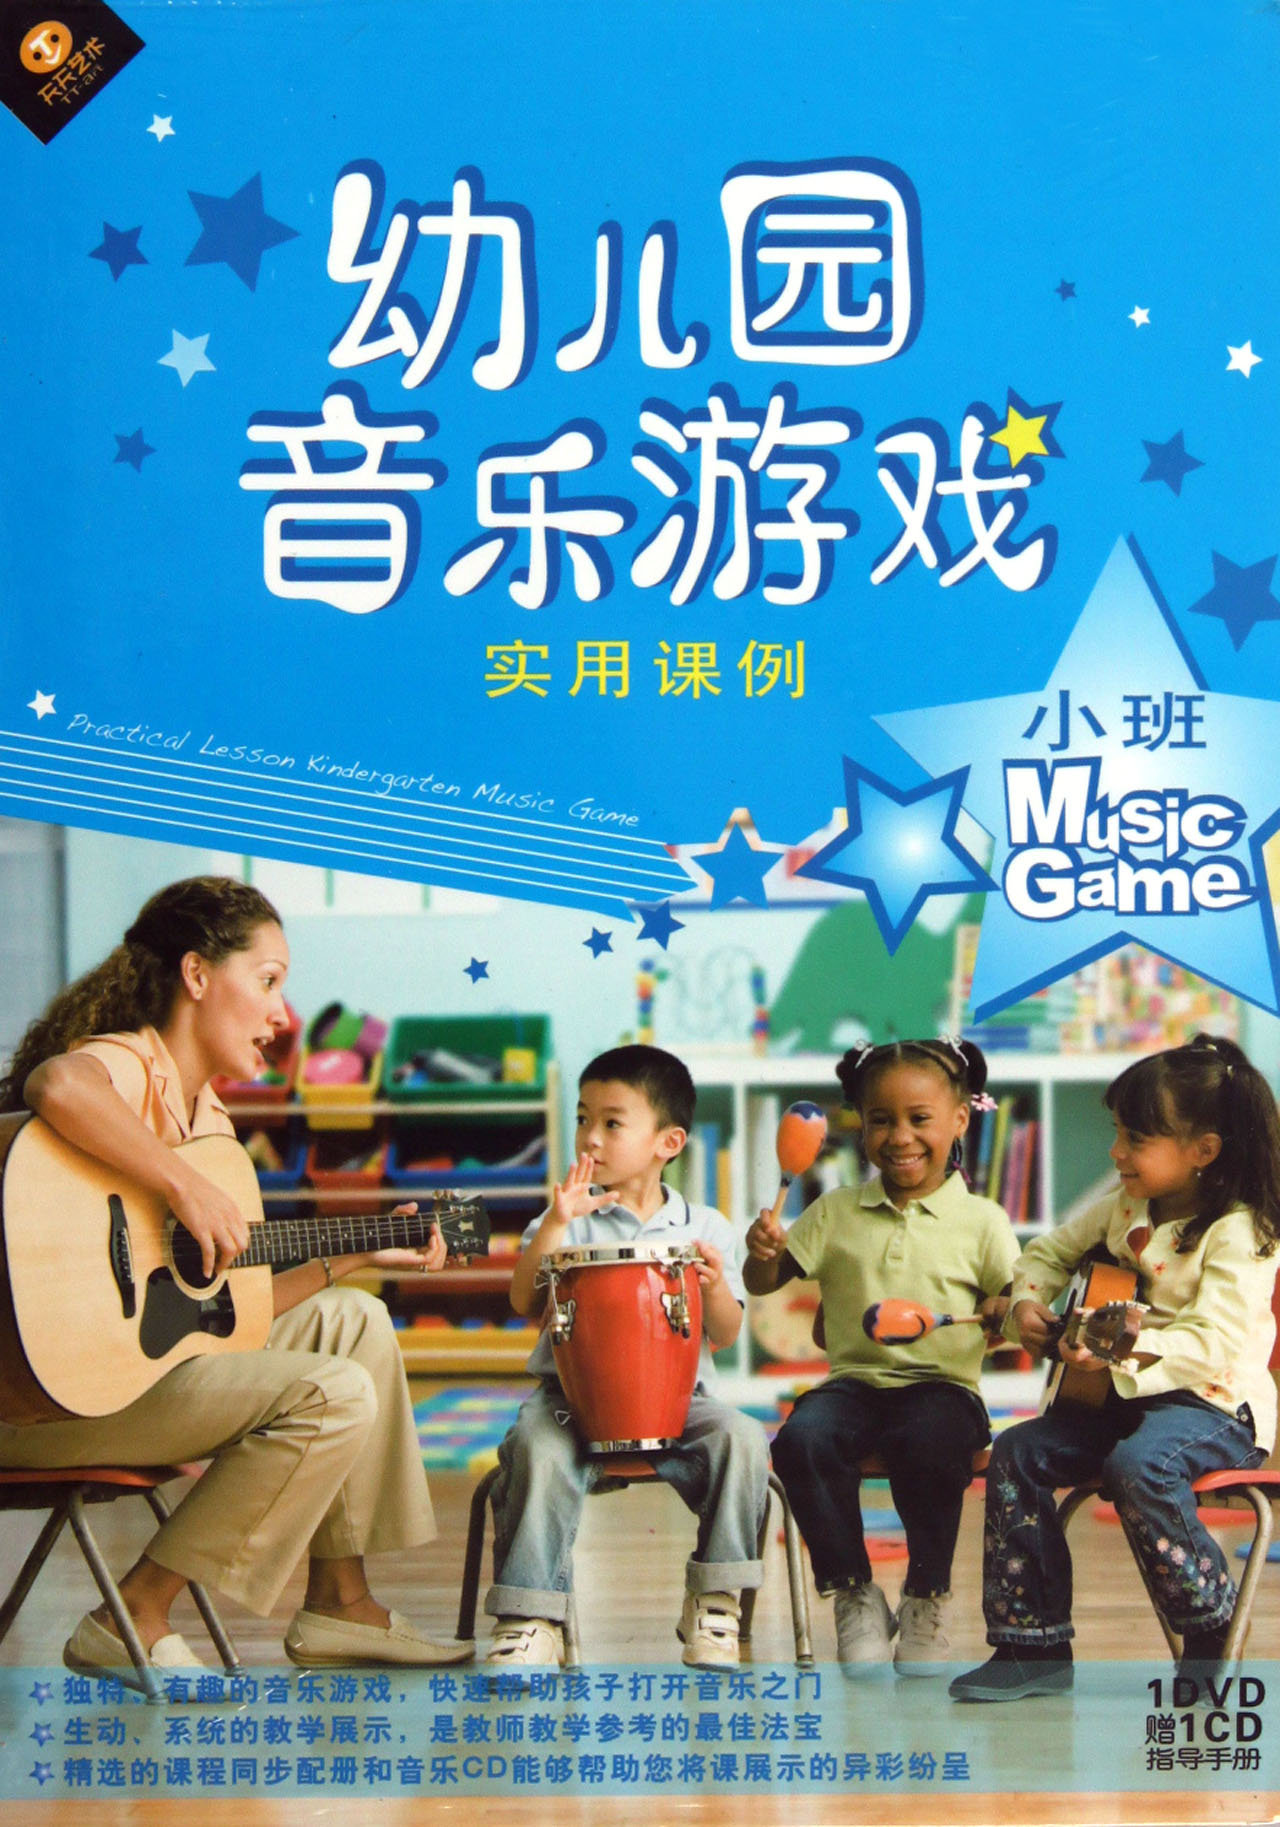 DVD+CD幼儿园音乐游戏实用课例 小班 (2碟附